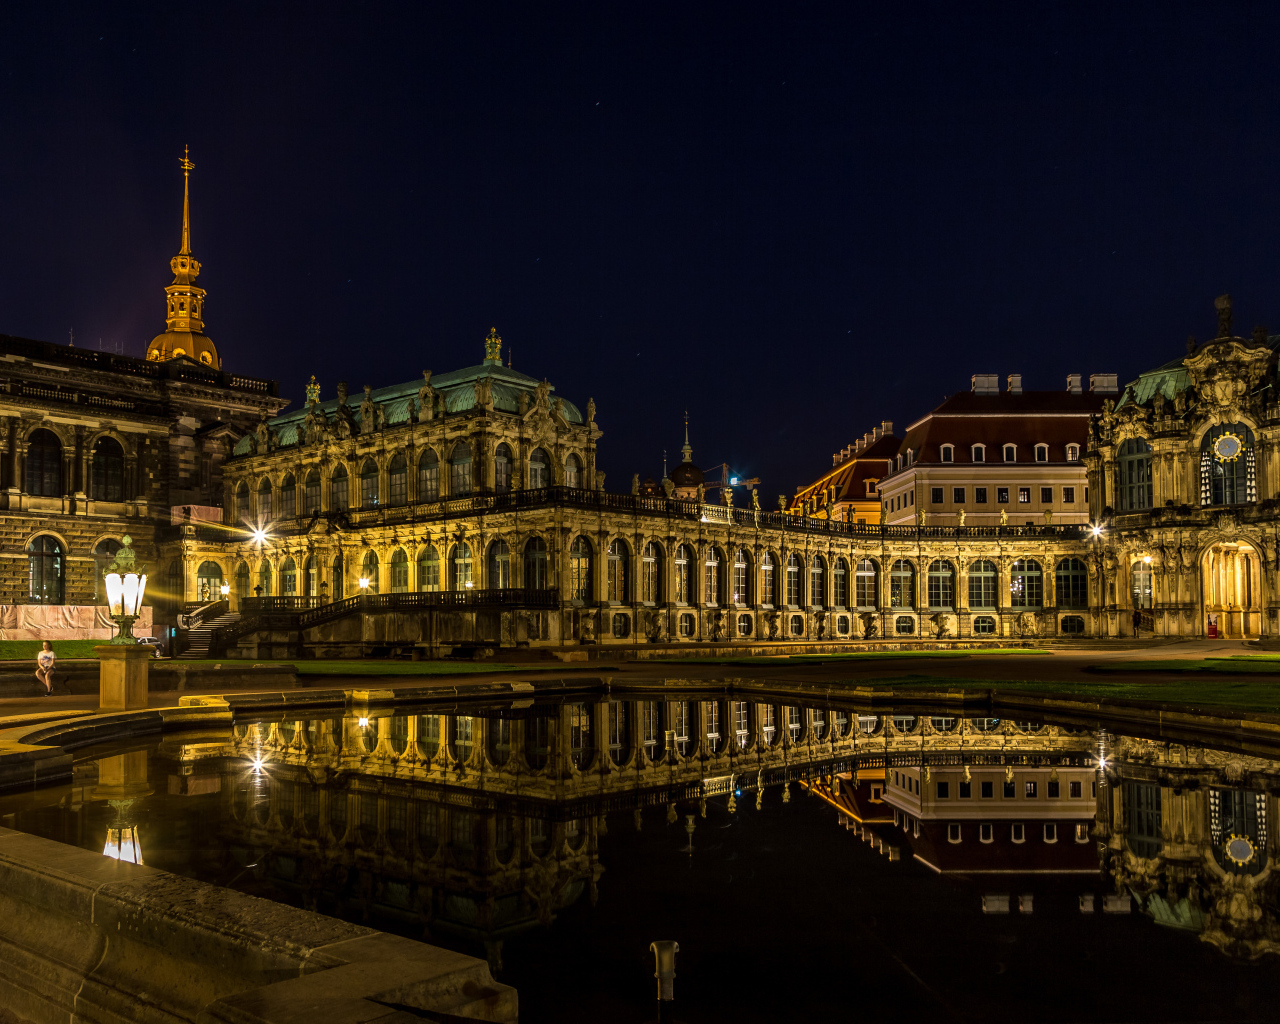 Старинный дворец Цвингер в свете ночных фонарей, Дрезден. Германия 